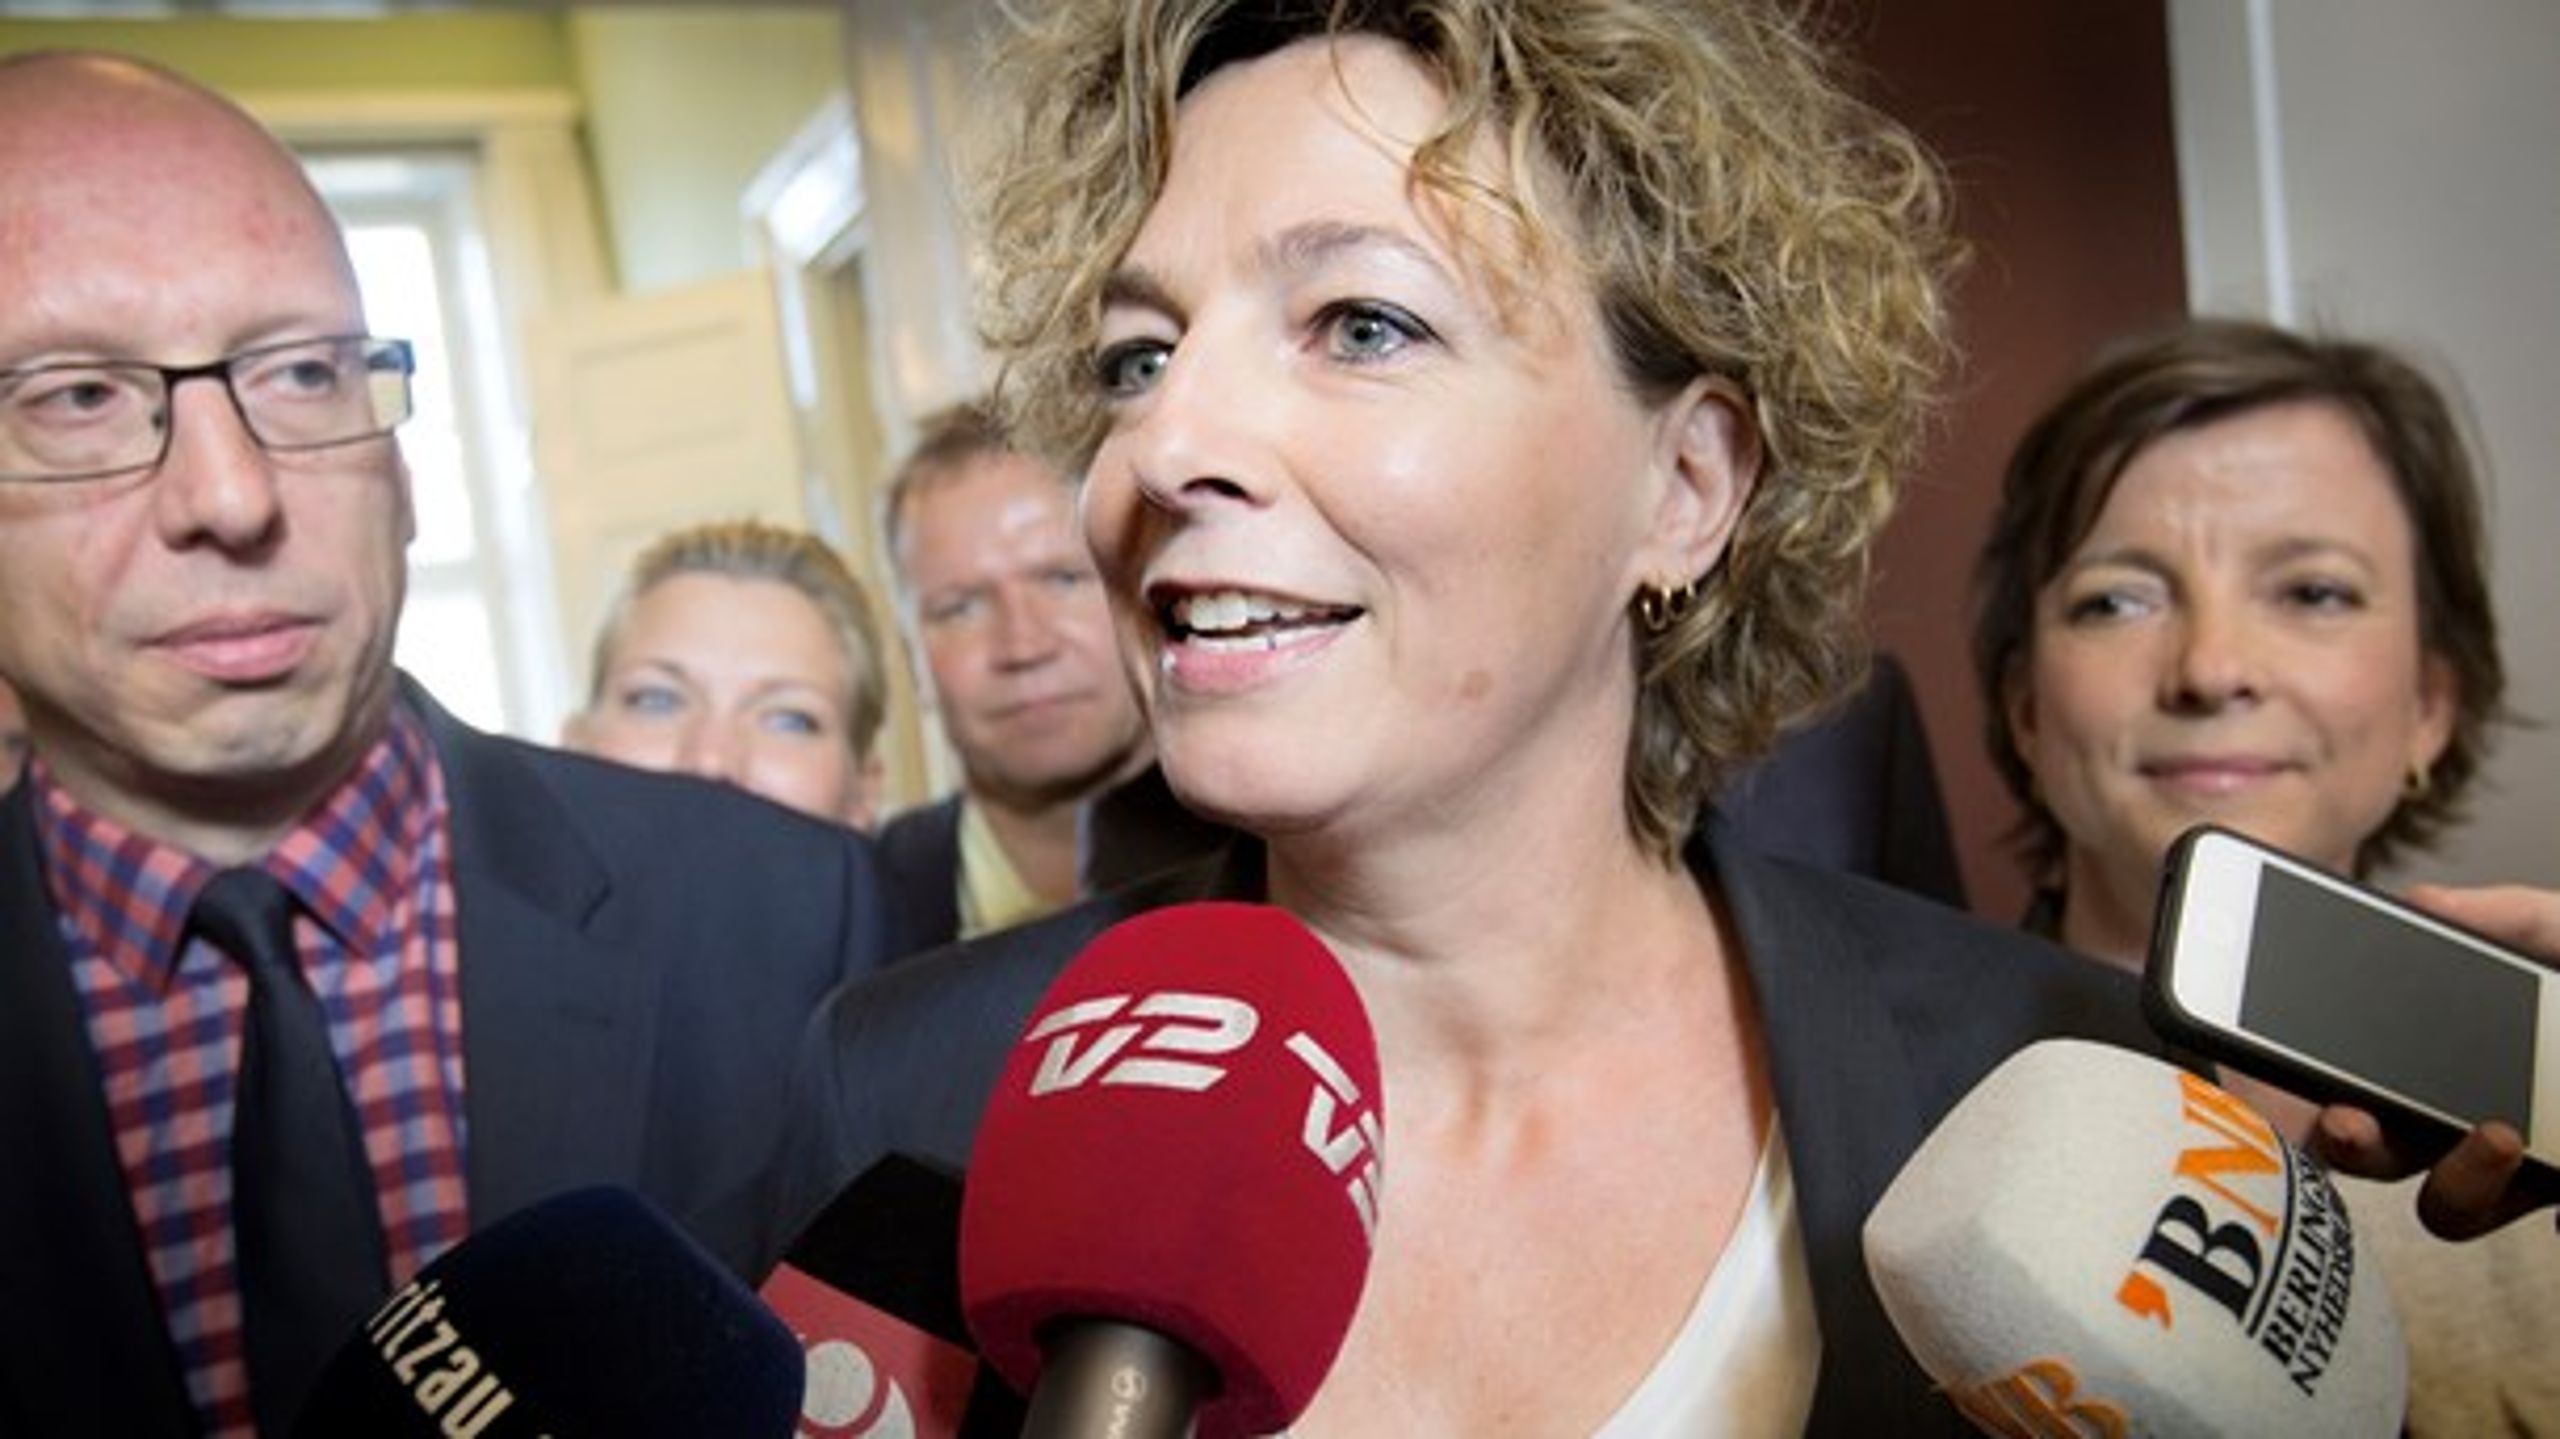 Daværende undervisningsminister Christine Antorini (S), da&nbsp;skolereformen blev forhandlet på plads mellem SSFR-regeringen, DF og Venstre.